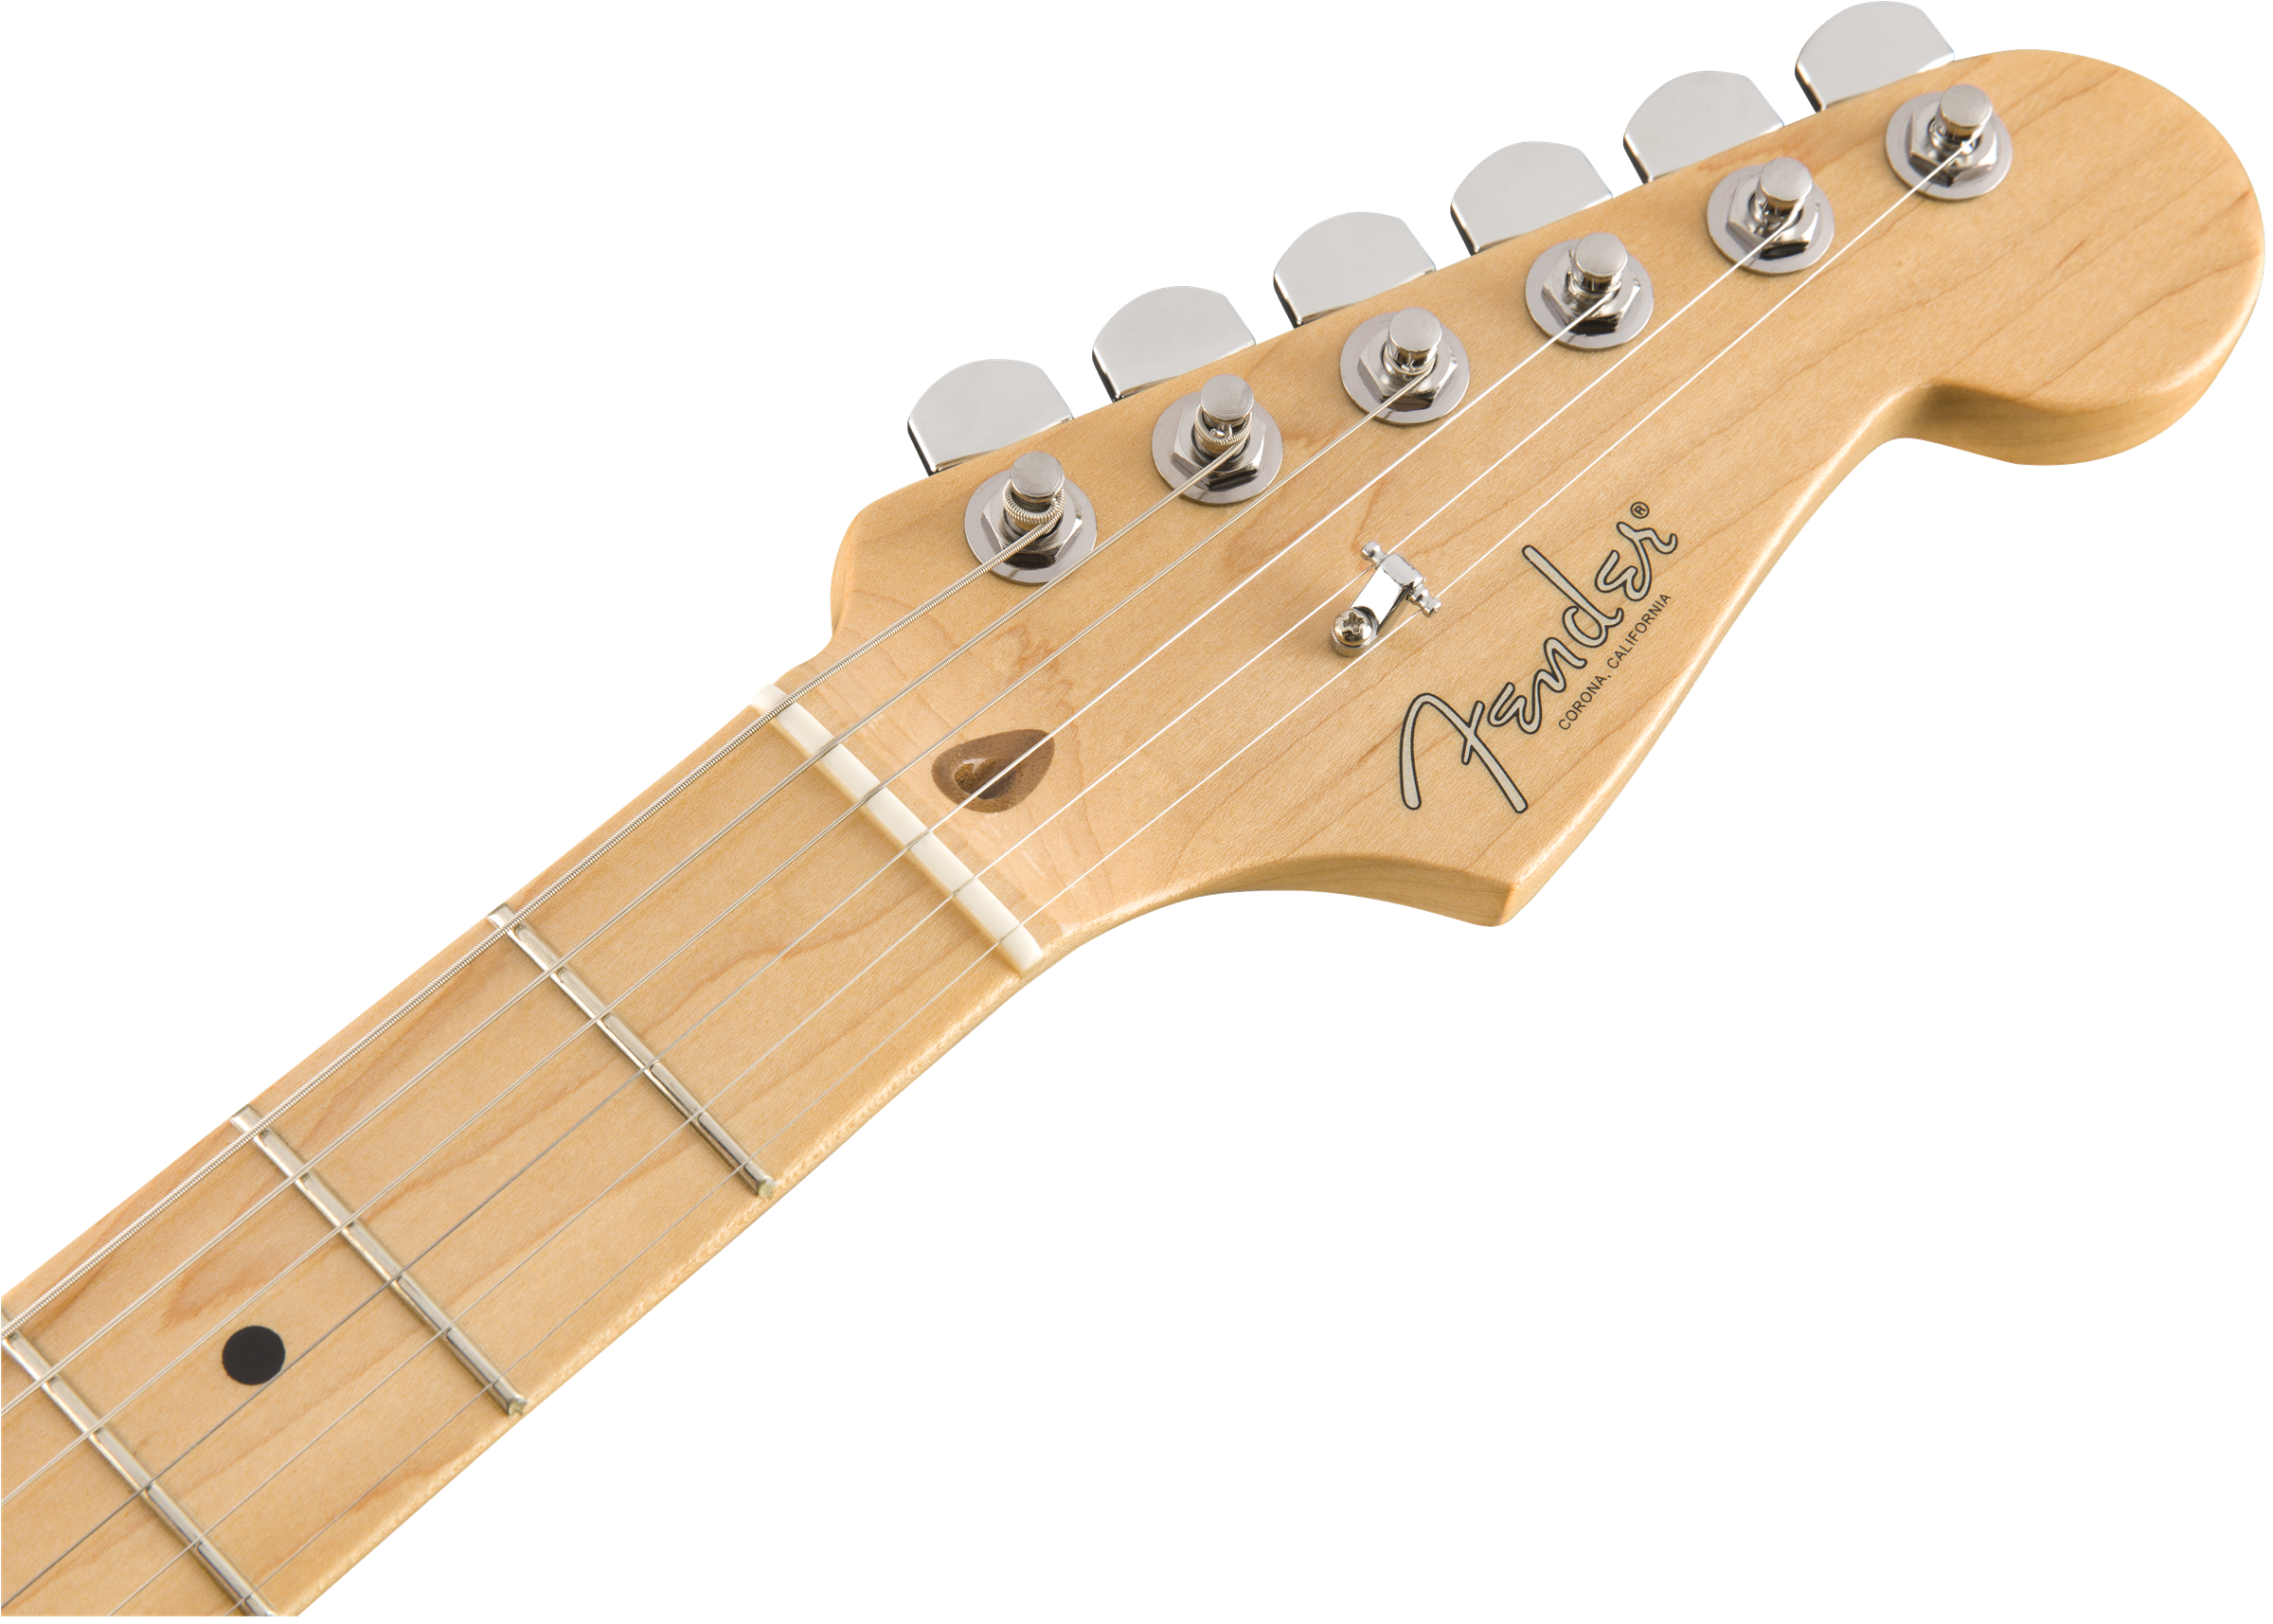 Fender Limited Edition Strat-Tele® Hybrid, Maple Fingerboard, 2-Color Sunburst